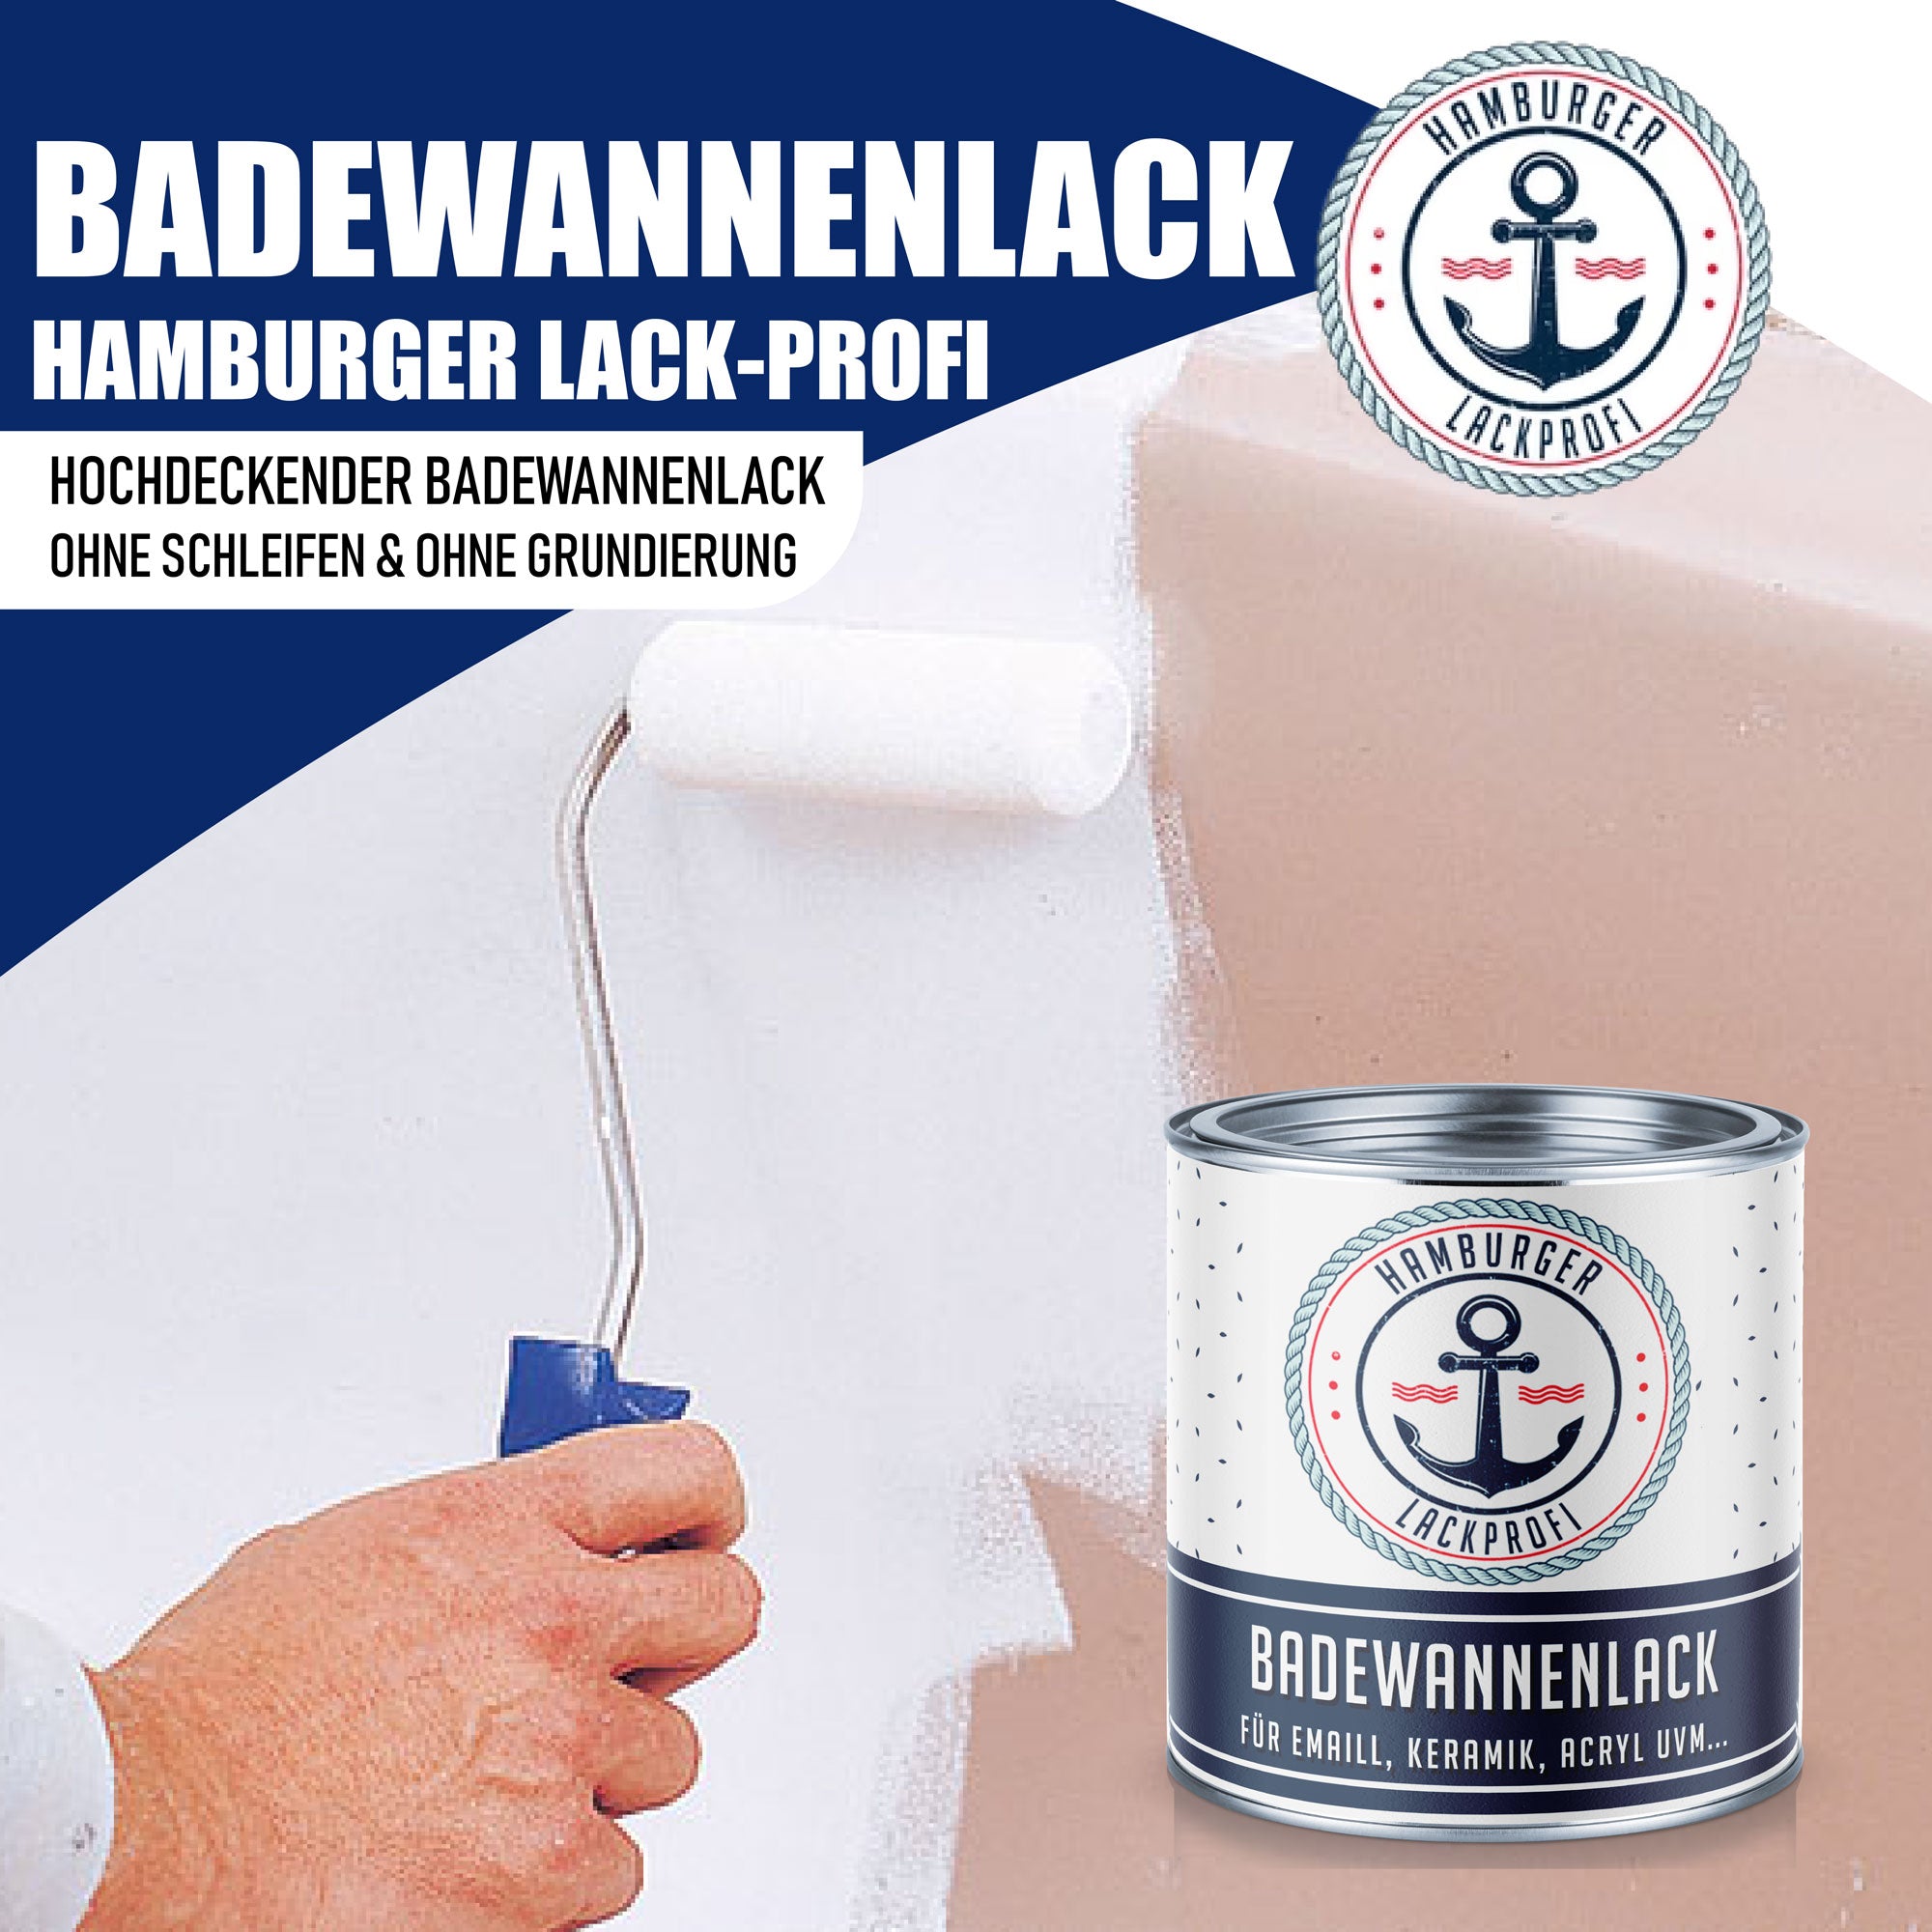 Hamburger Lack-Profi 2K Badewannenlack Verkehrsgrau A RAL 7042 - Glänzend / Seidenmatt / Matt